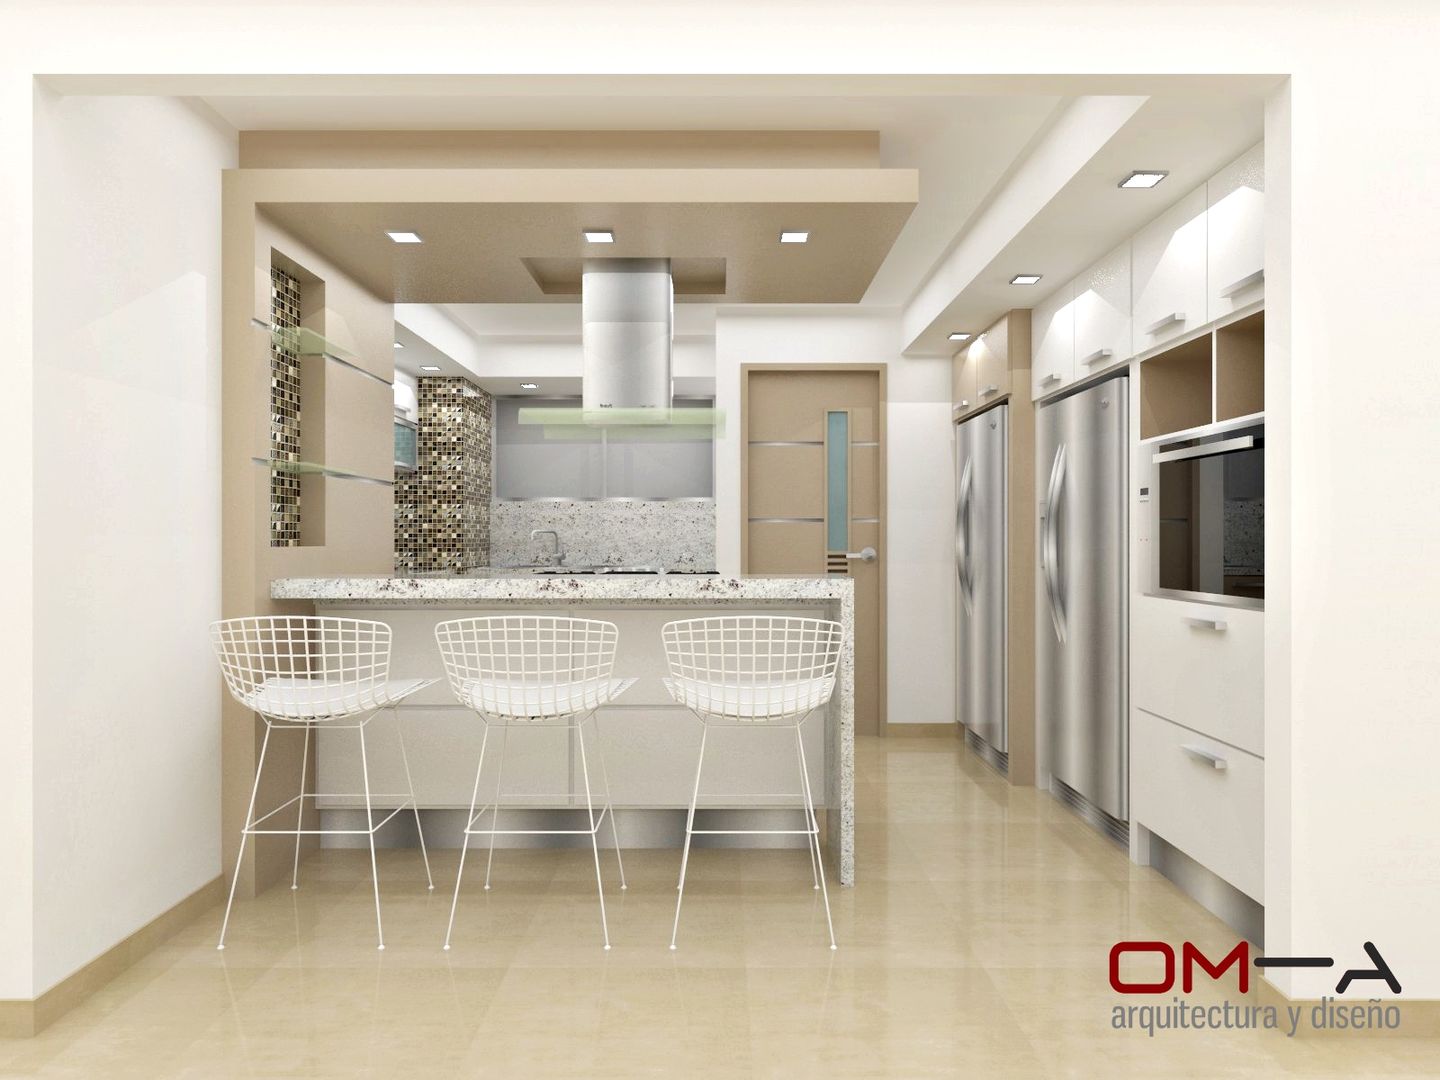 Diseño de cocina, om-a arquitectura y diseño om-a arquitectura y diseño مطبخ